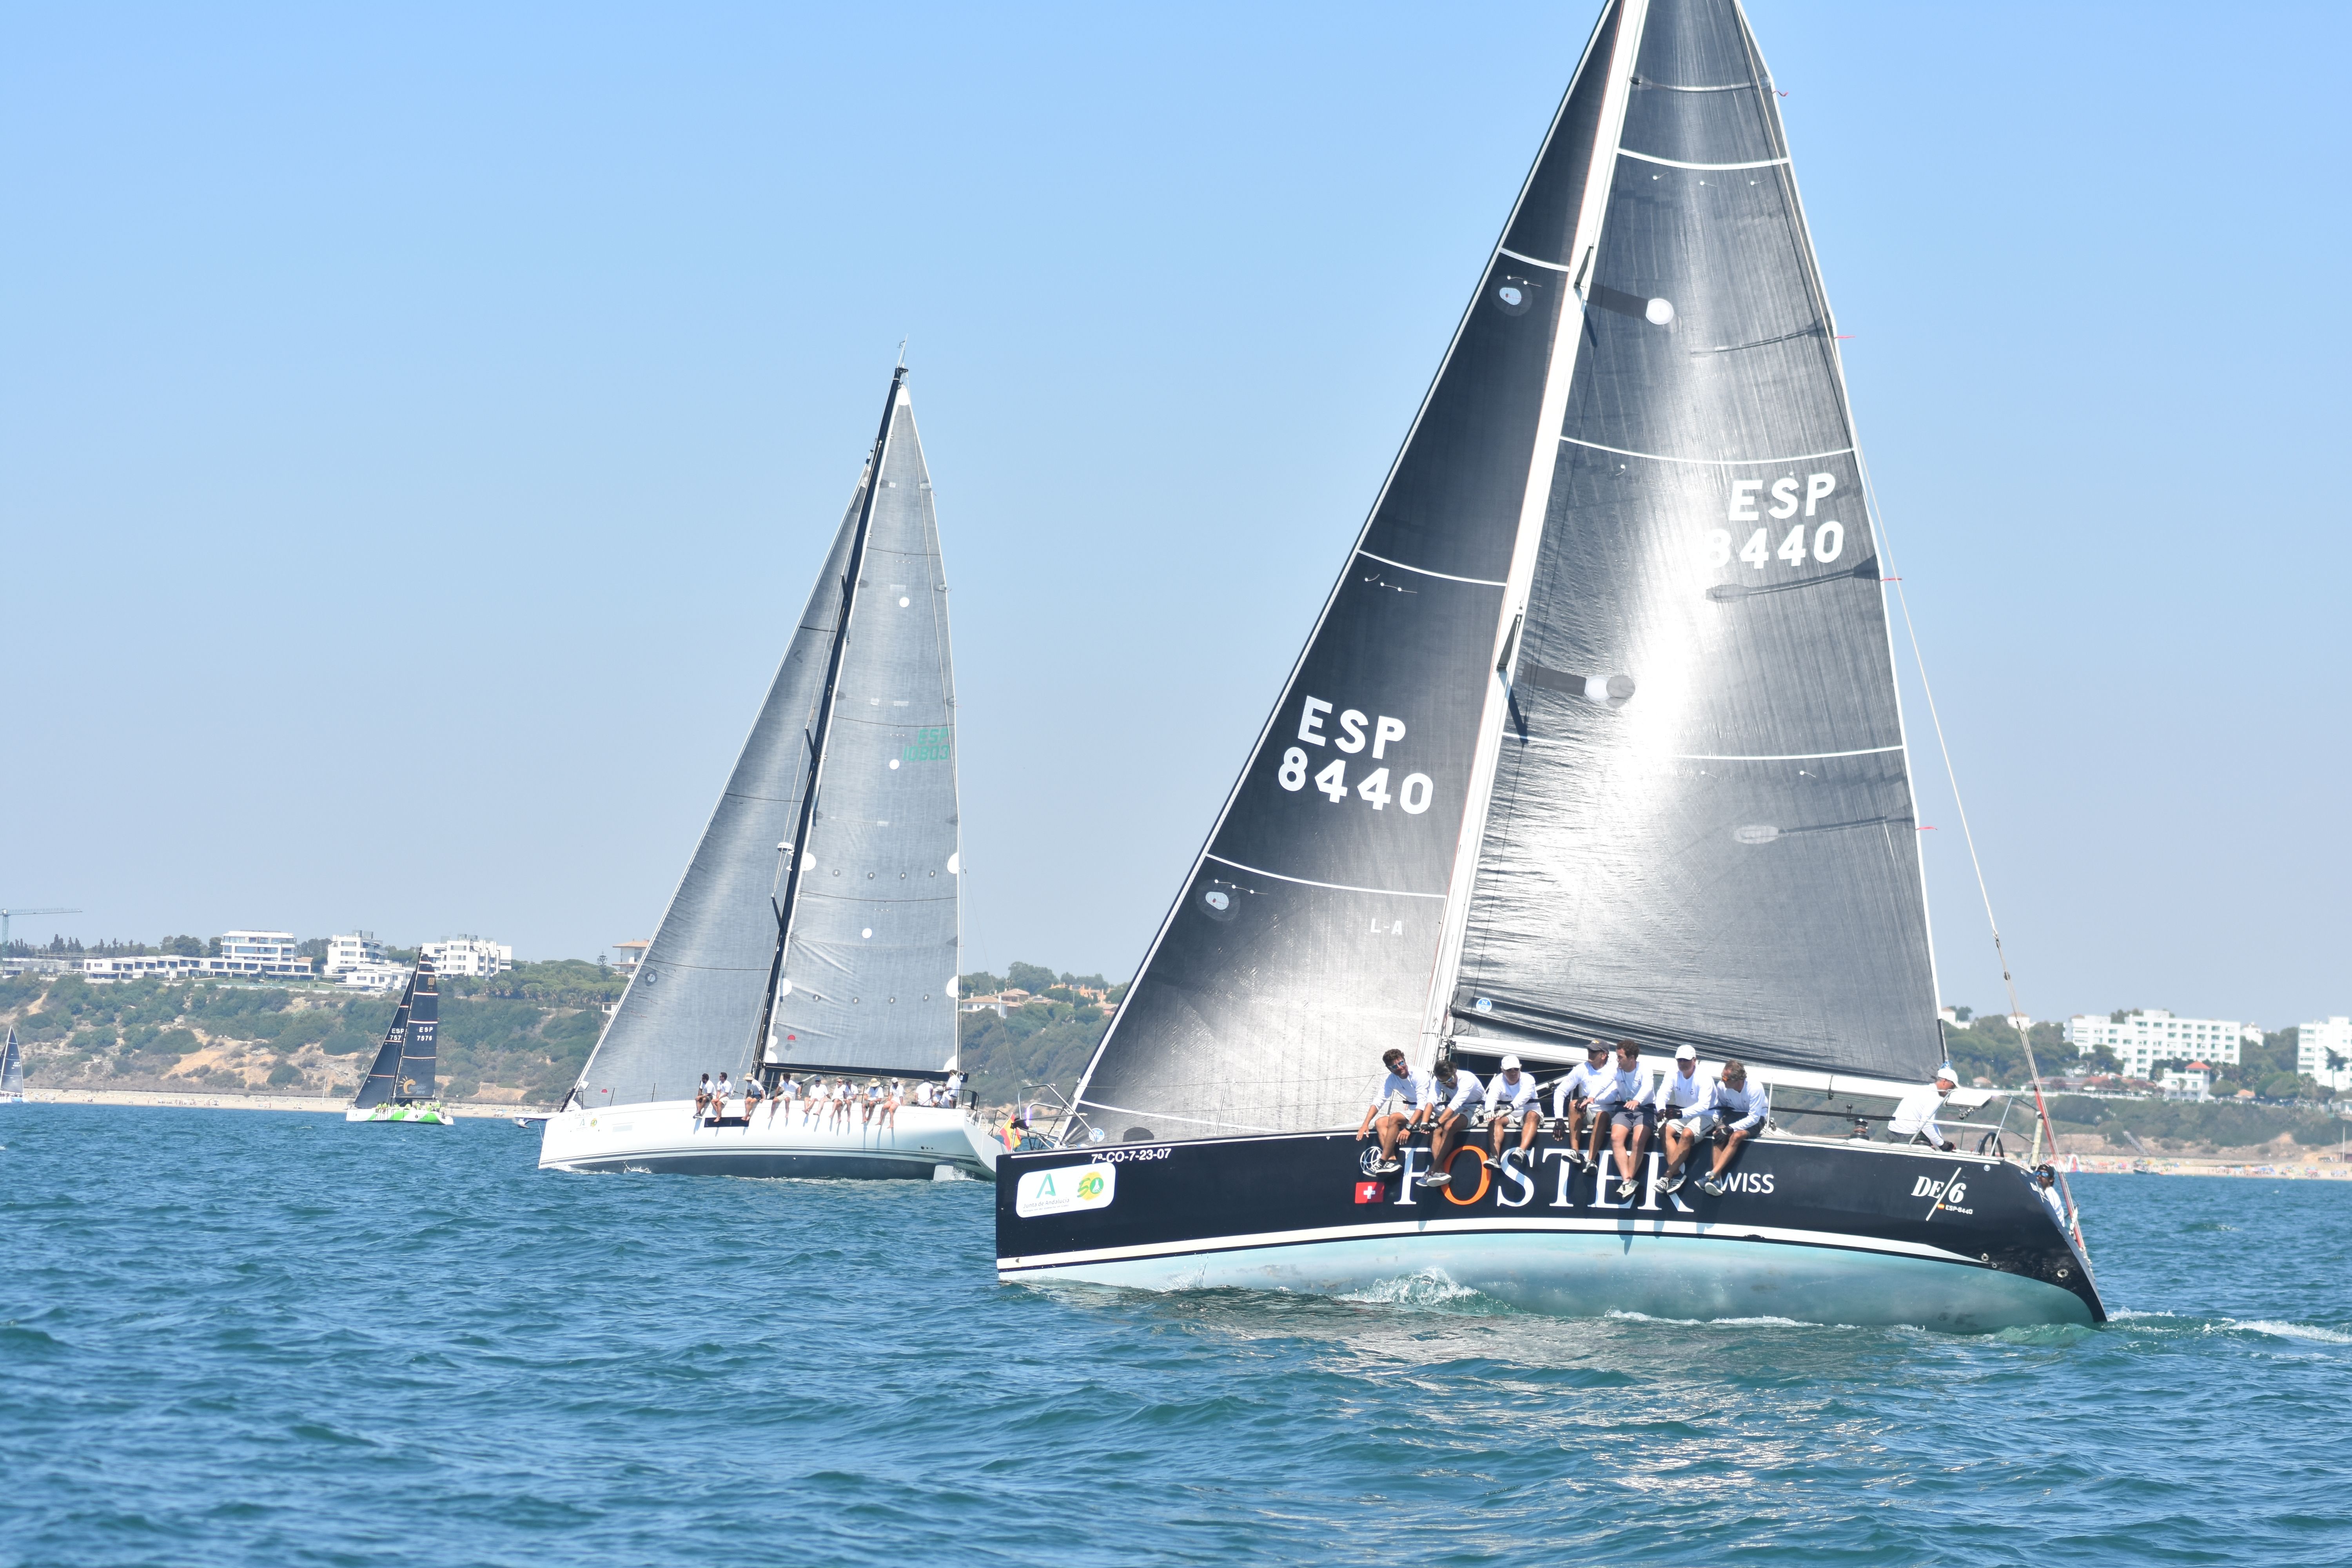 El ‘DE 6 Foster Swiss’ encara imbatido la recta final de nuestra regata con el primer título de la semana en su poder